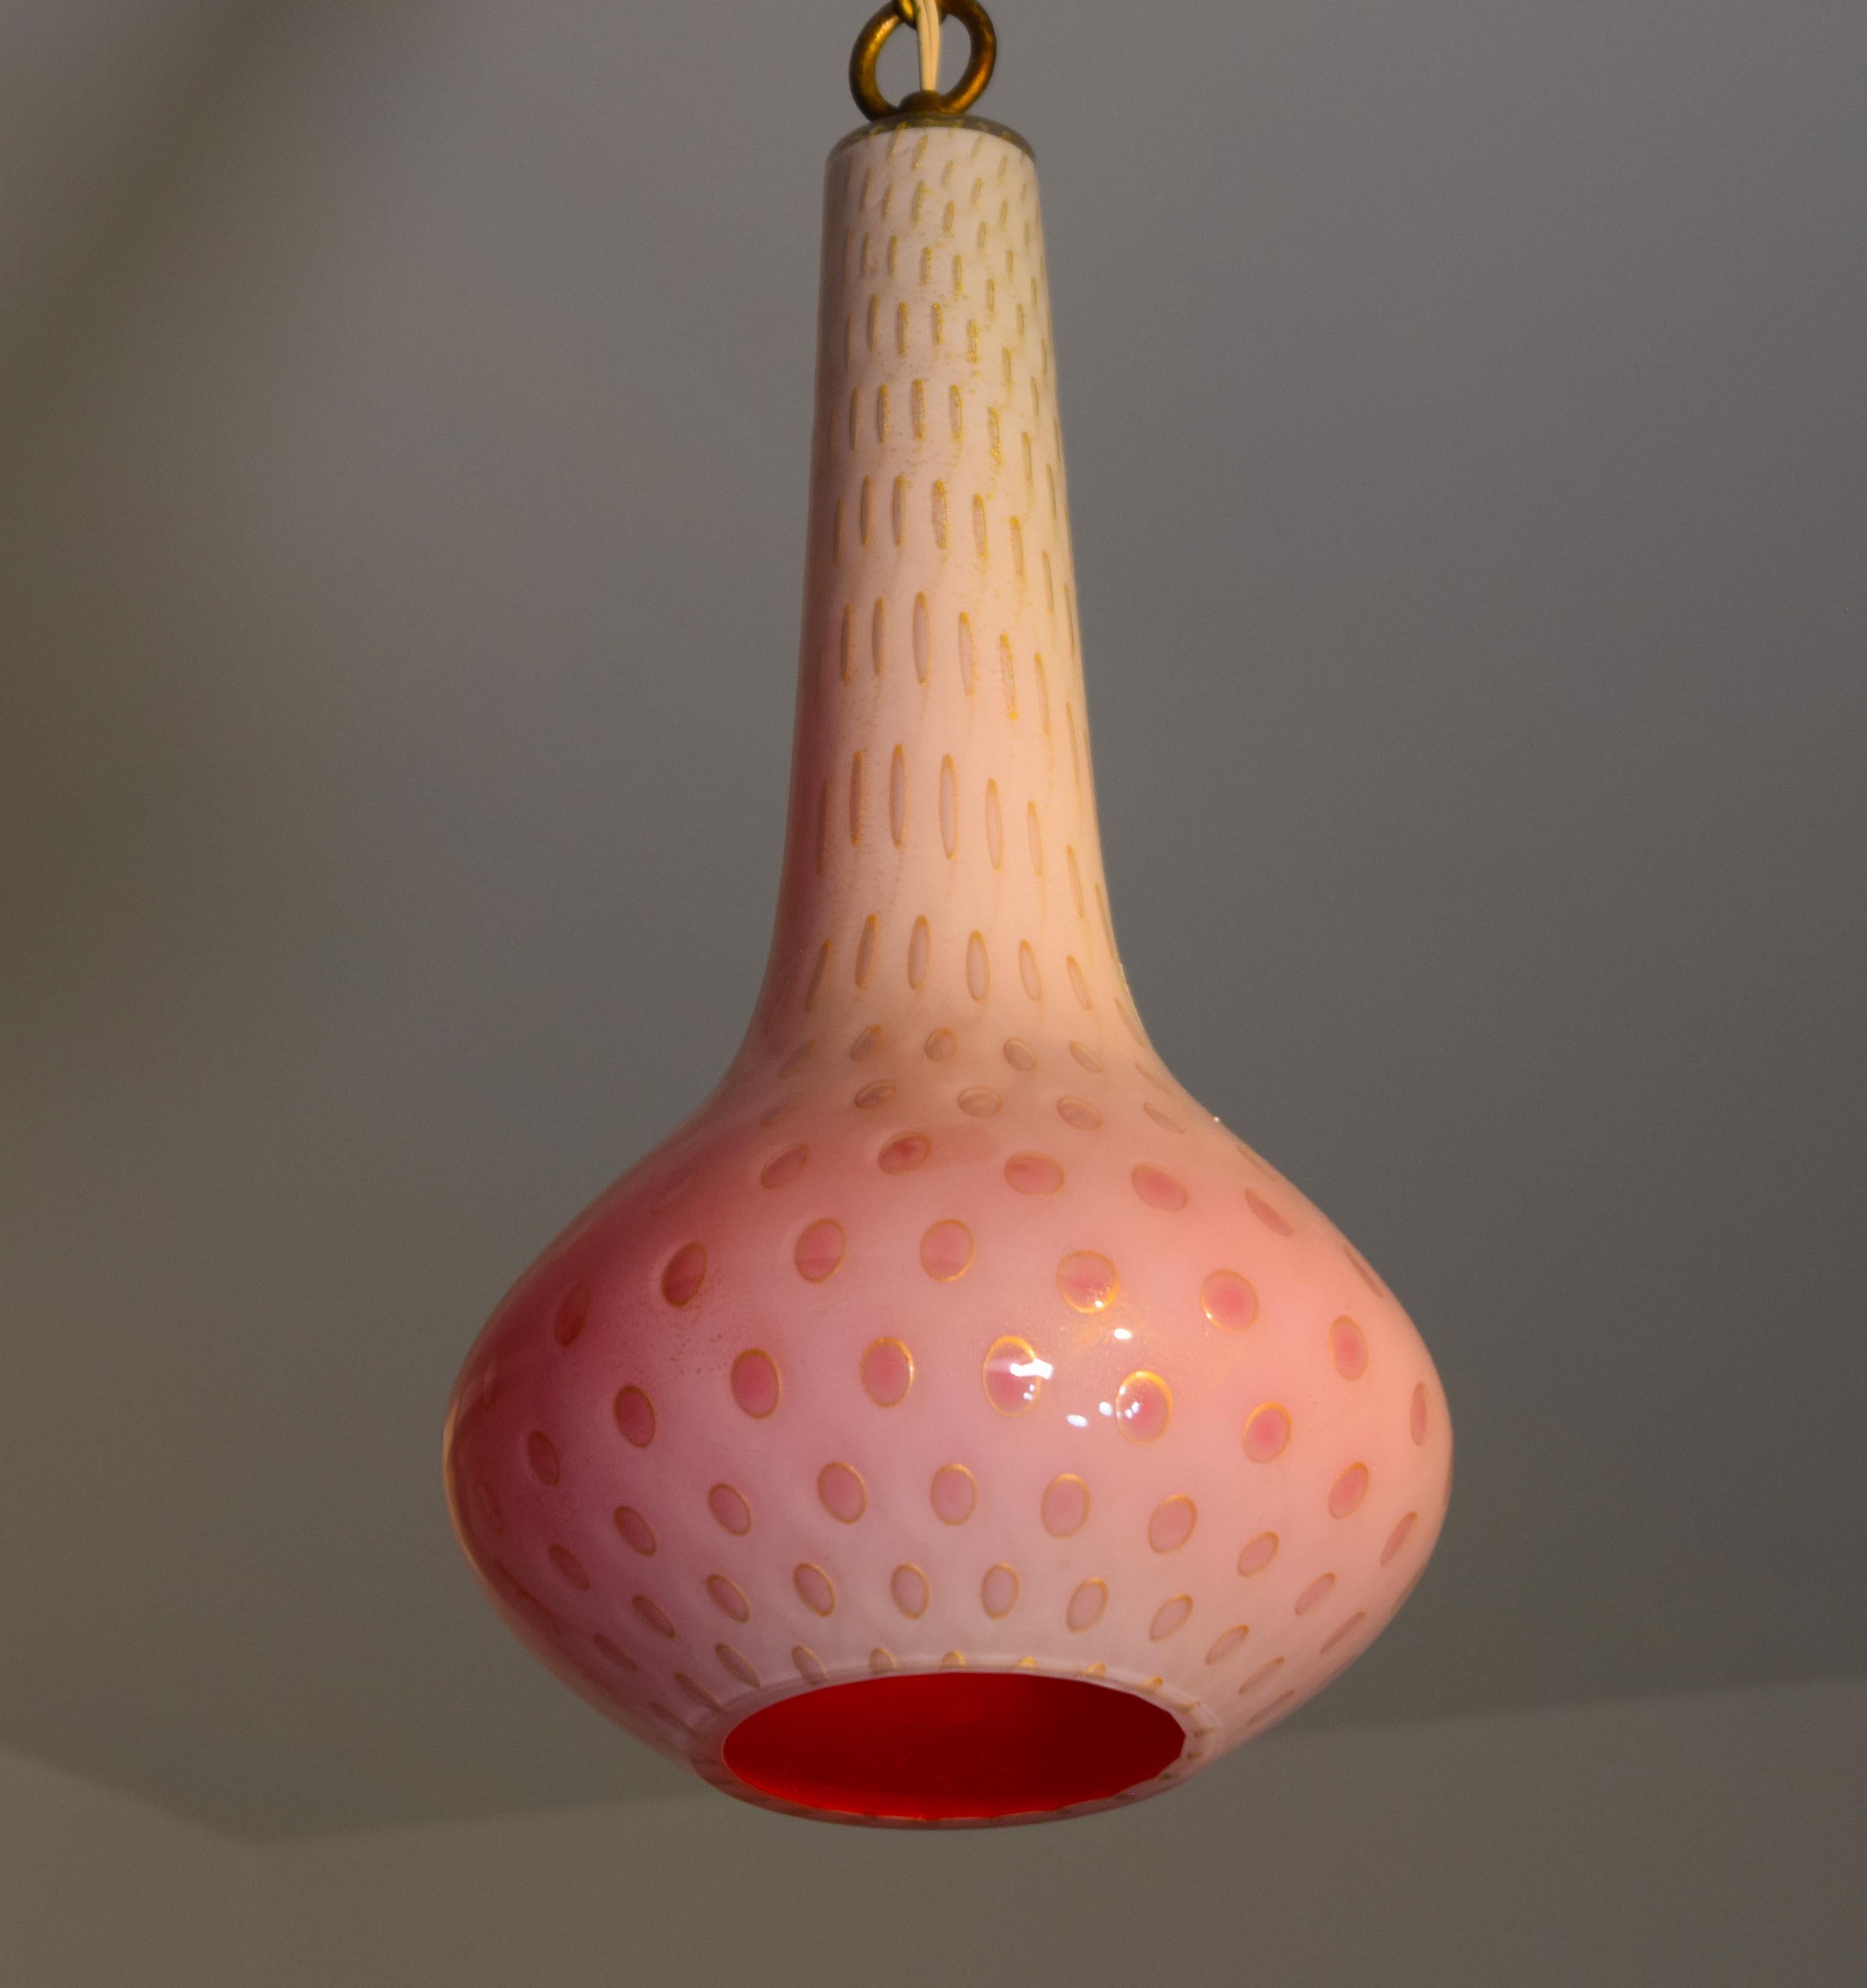 Une lampe suspendue rare par Aldrefo Barbini, Italie vers 1950. Verre de génie en forme de boîte avec intérieur rose, et bulles contrôlées dans le verre extérieur avec cercles et mouchetures d'or incrustés dans le blanc. Mesure 23